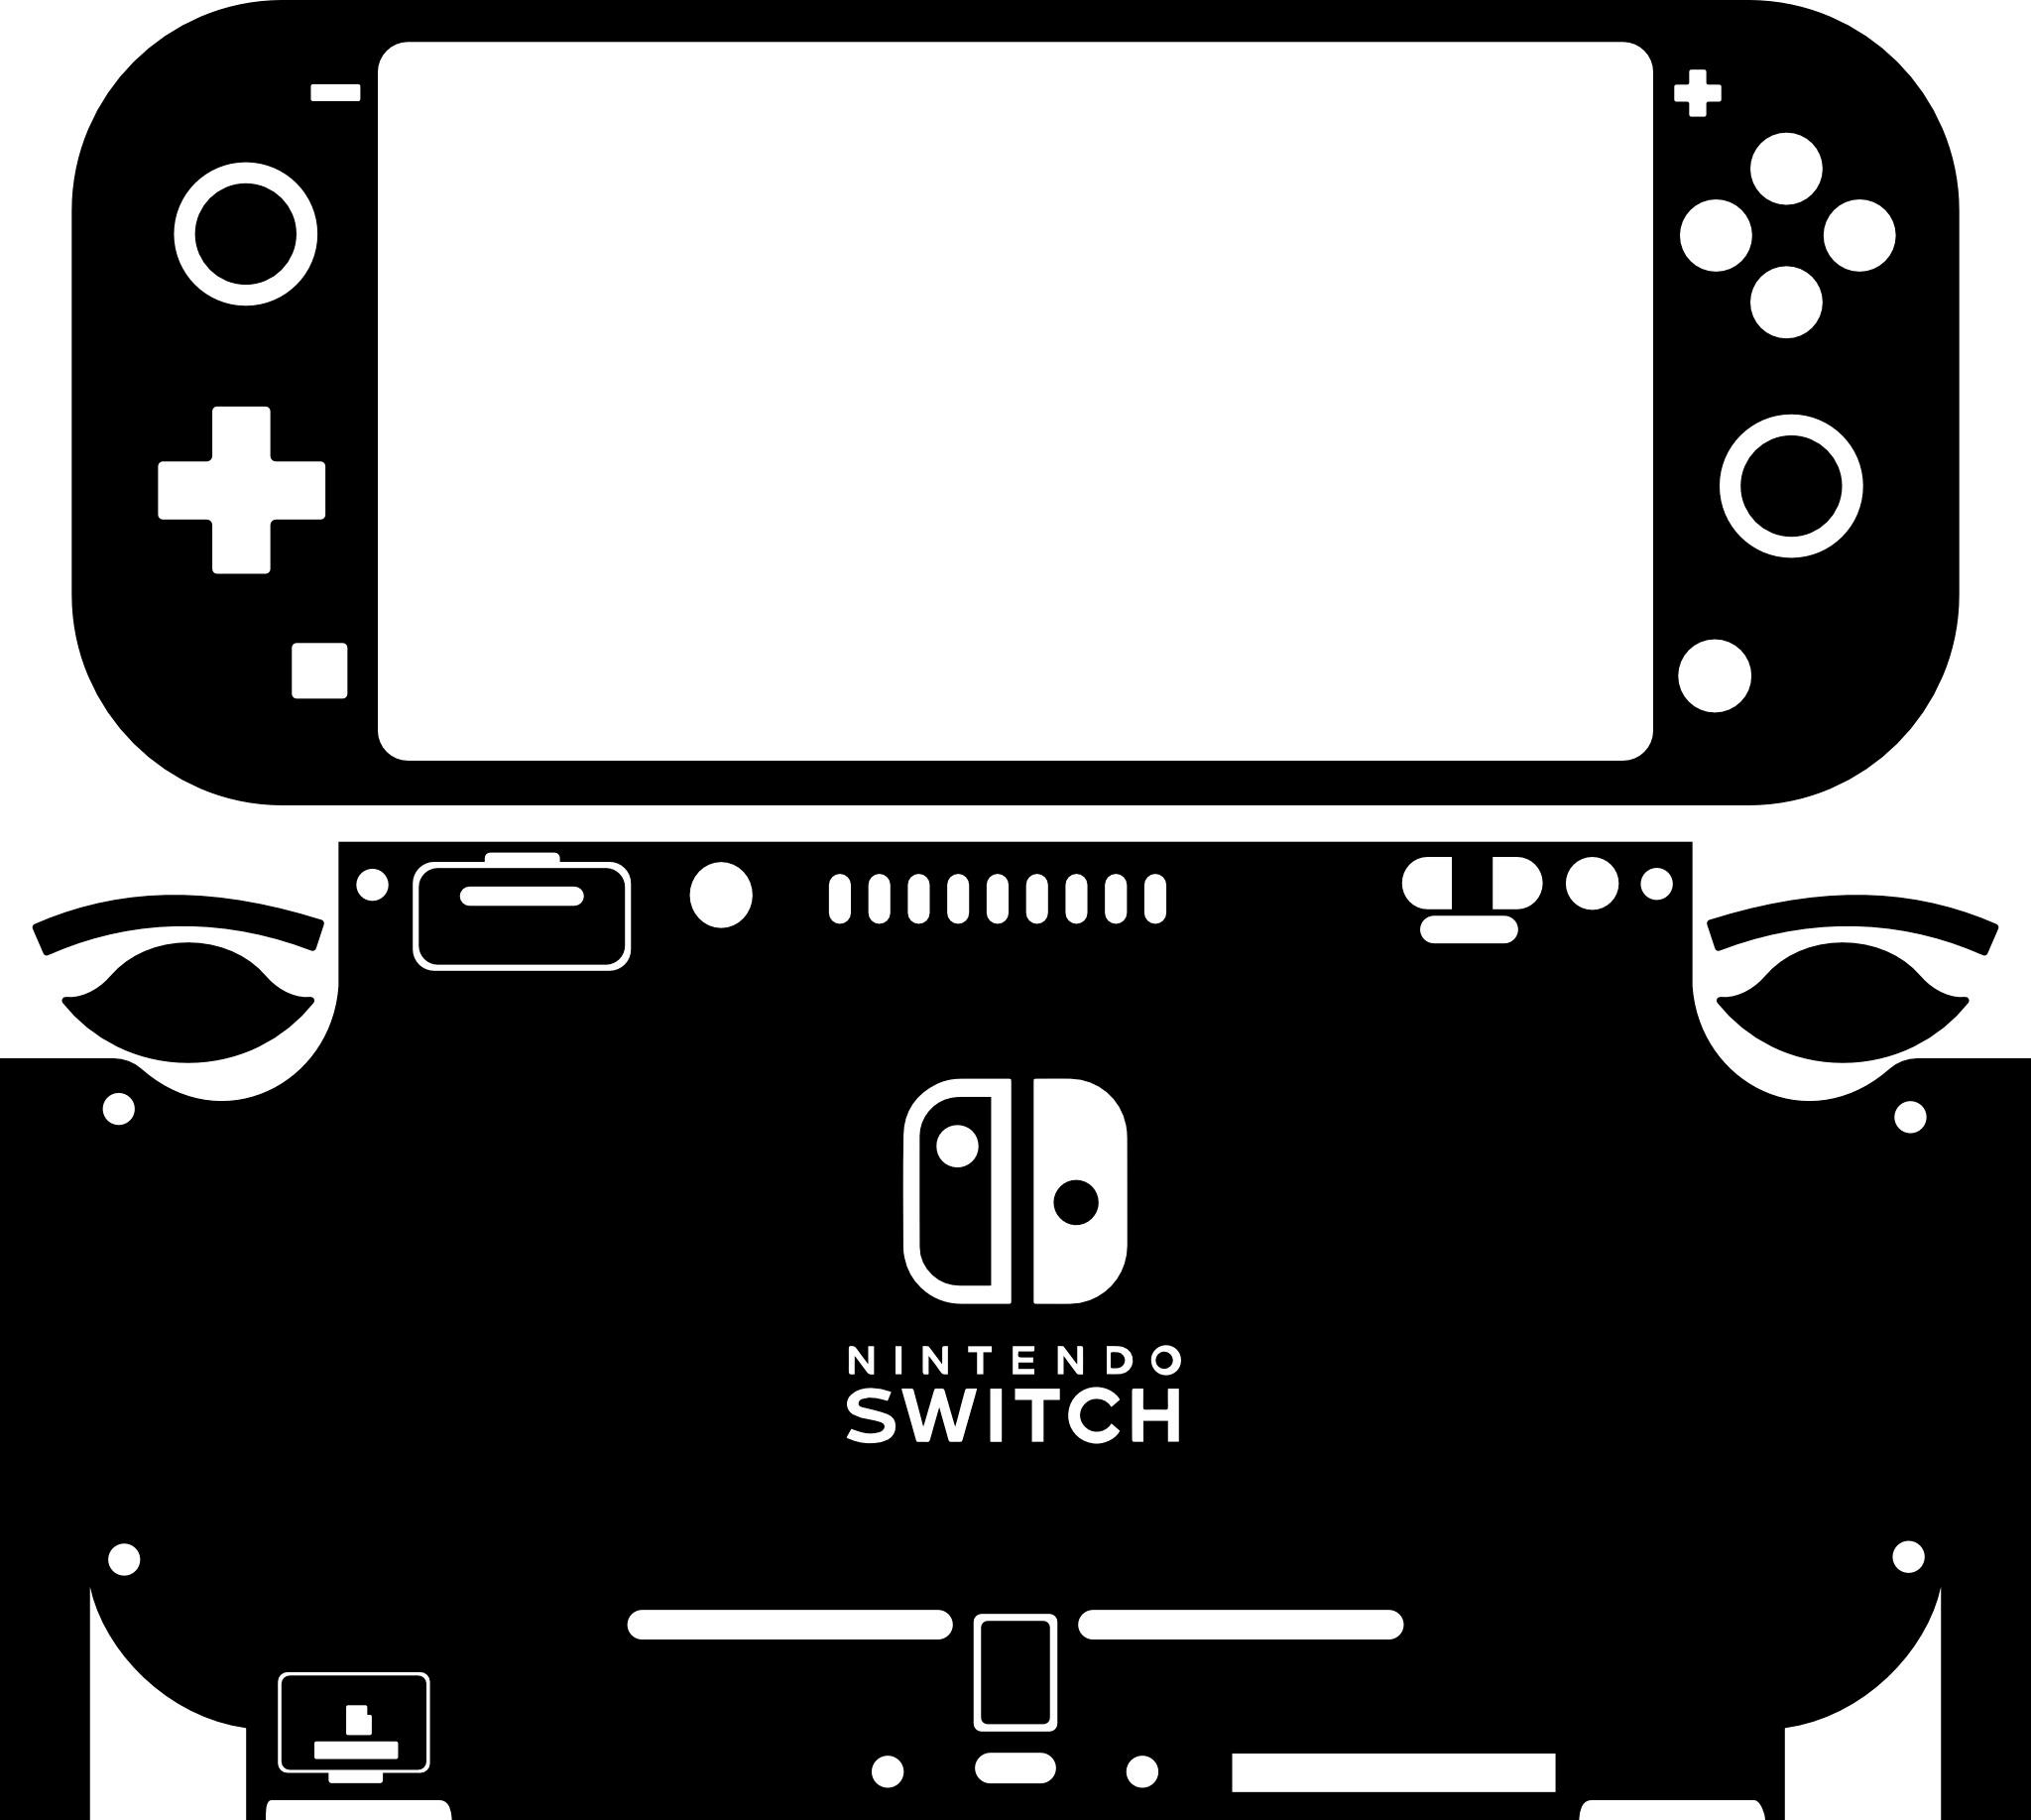 Skin decal dán Nintendo Switch Lite mẫu Corgi dễ thương so cute nền hồng phối trắng (dễ dán, đã cắt sẵn)